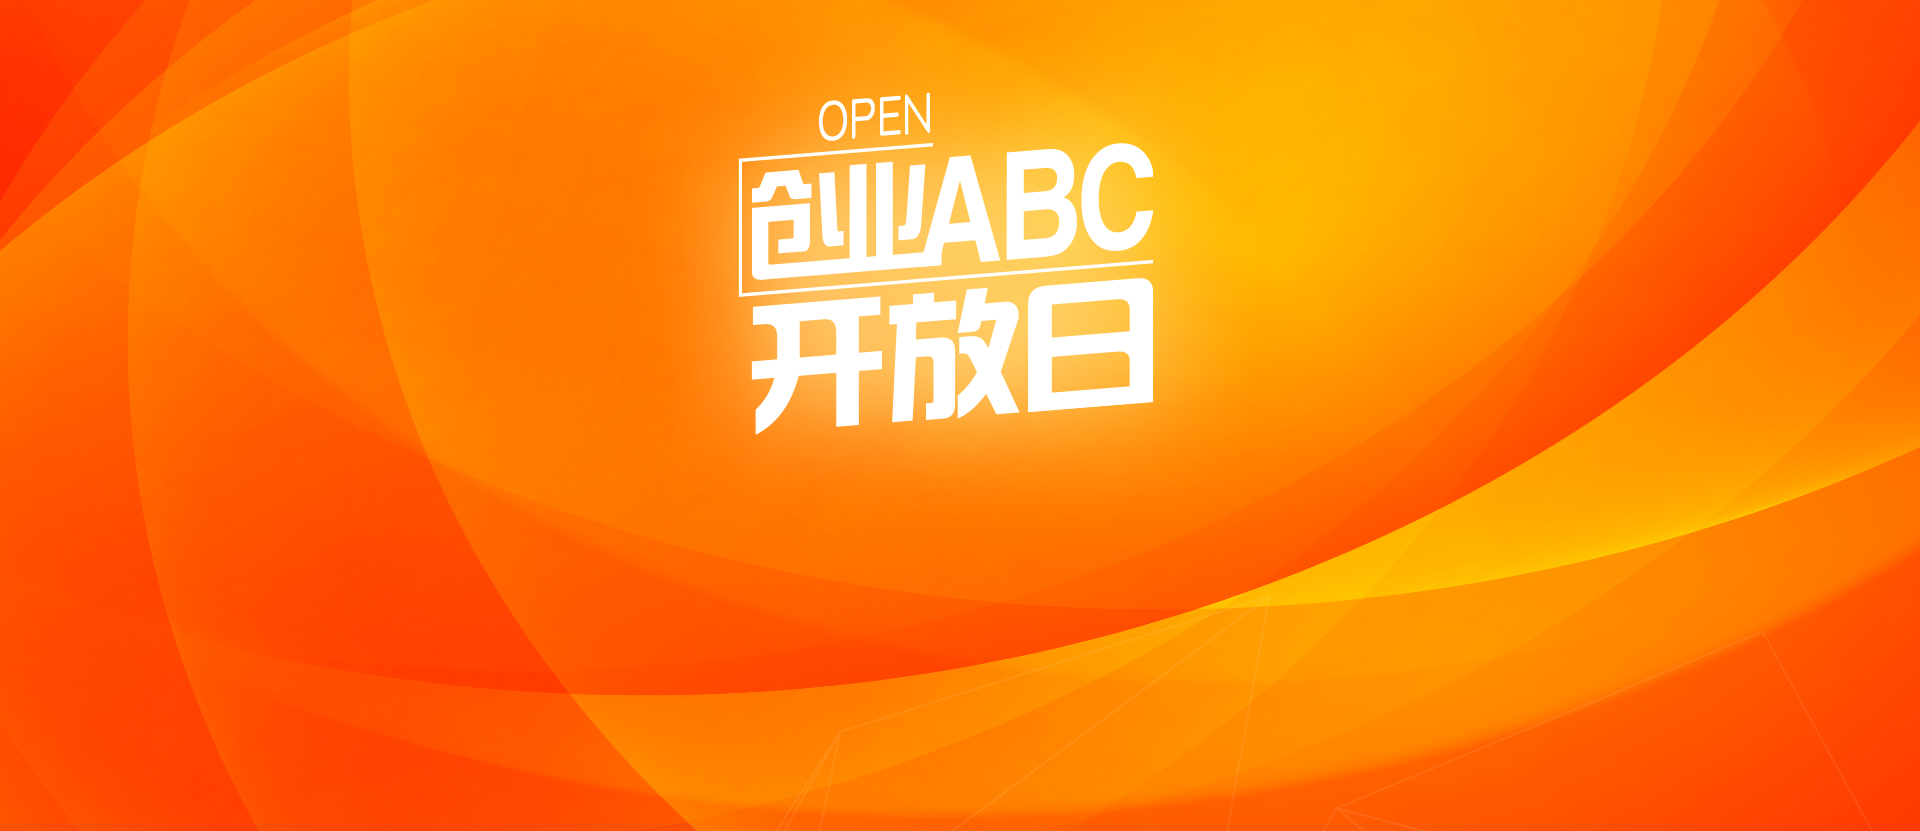 创业ABC第130期开放日 - 创业ABC开放日 - 创业活动 - 创业工坊